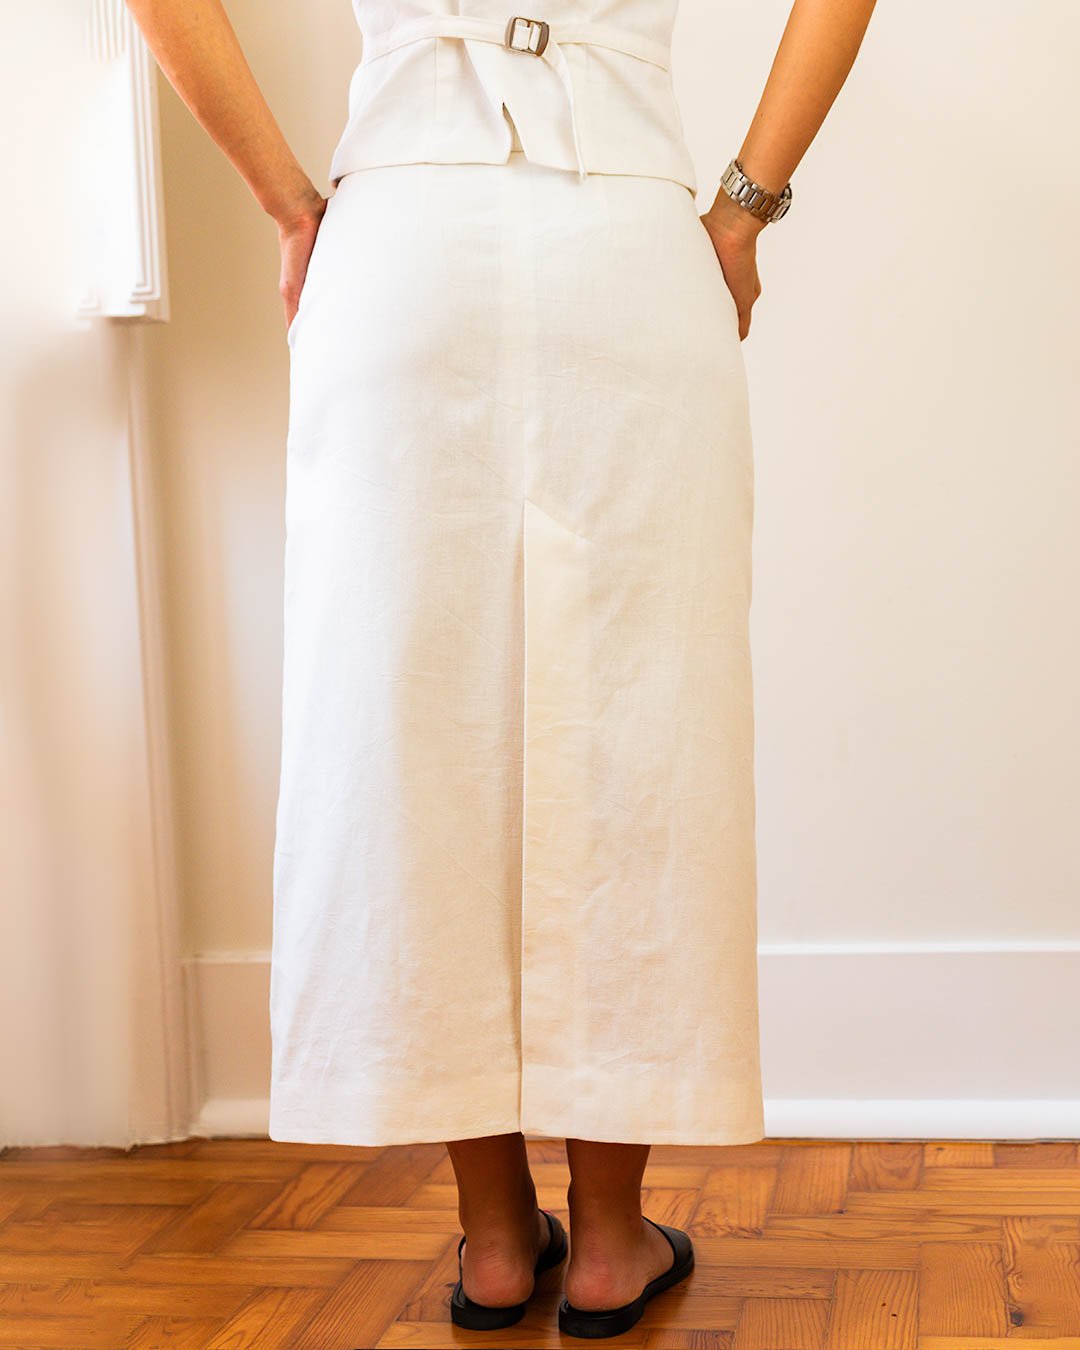 Iman Skirt - PDF Sewing Pattern